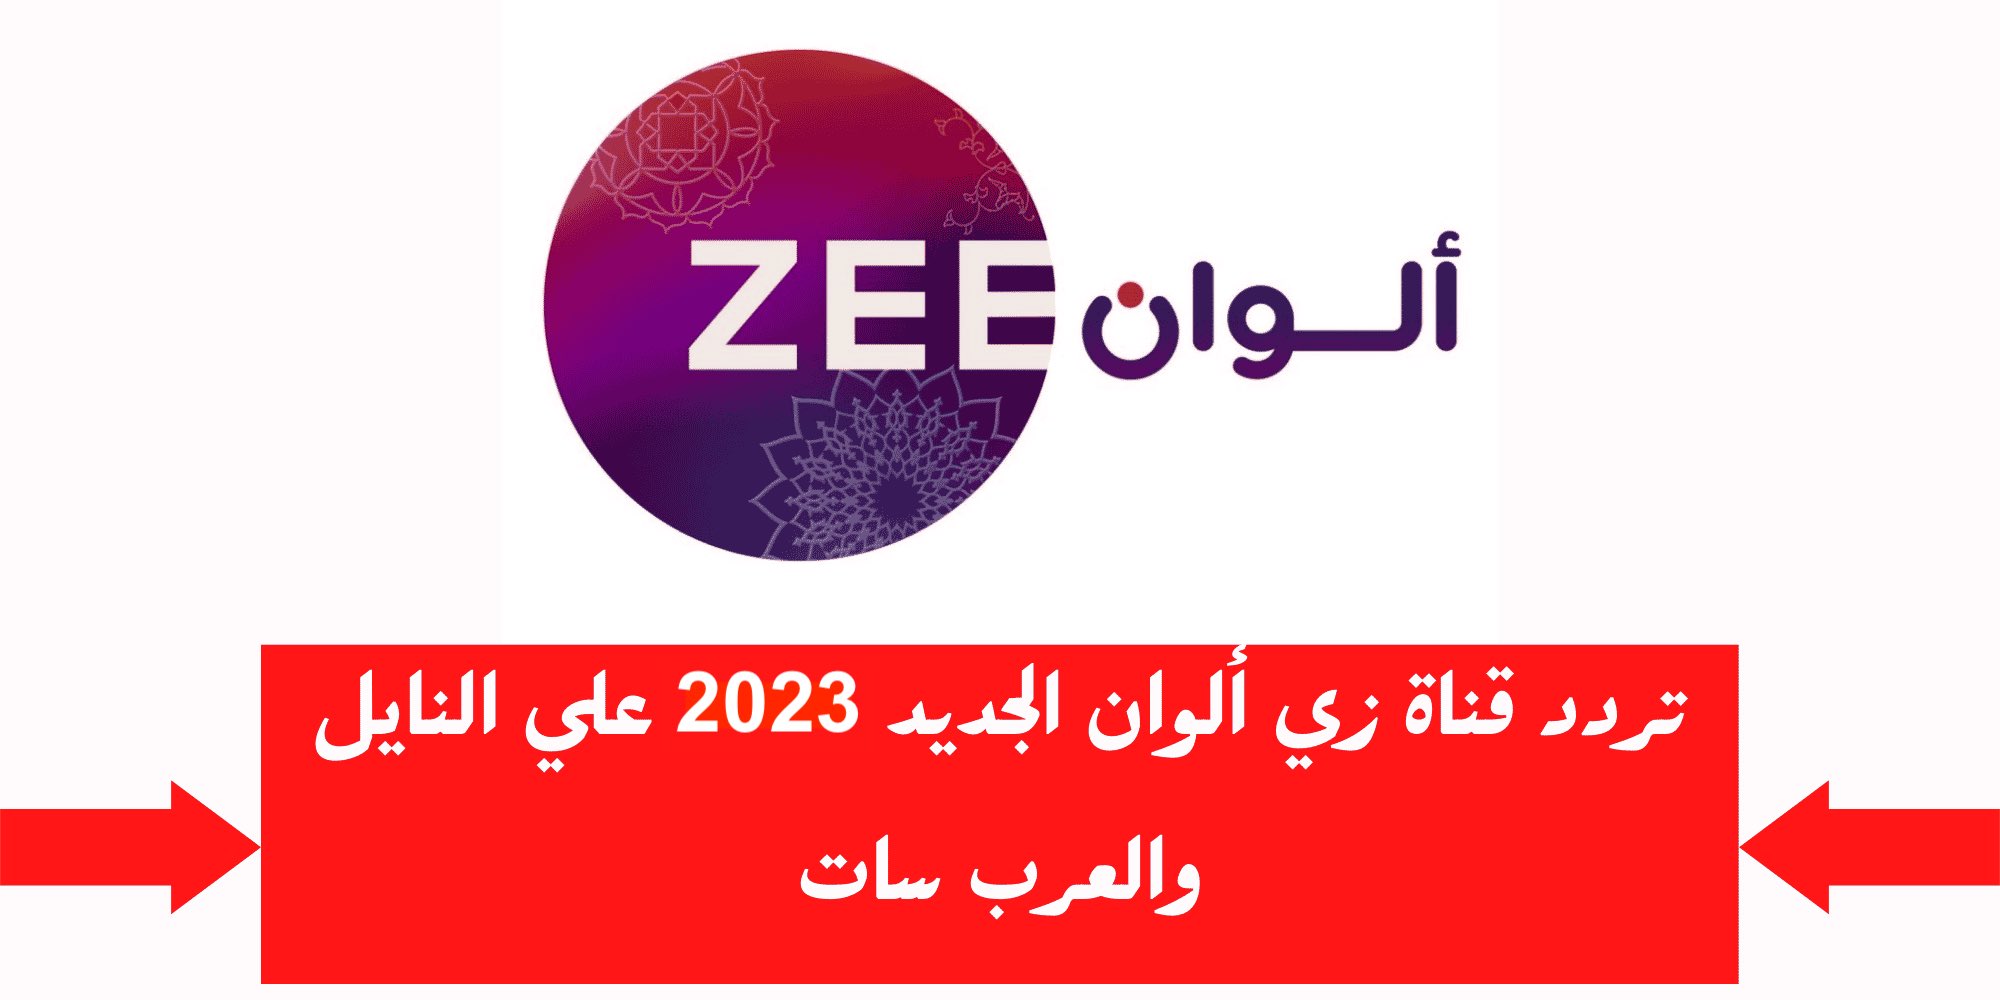 تردد قناة زي الوان الجديد 2023 علي النايل سات وعربسات Zee Alwan التردد الجديد HD SD